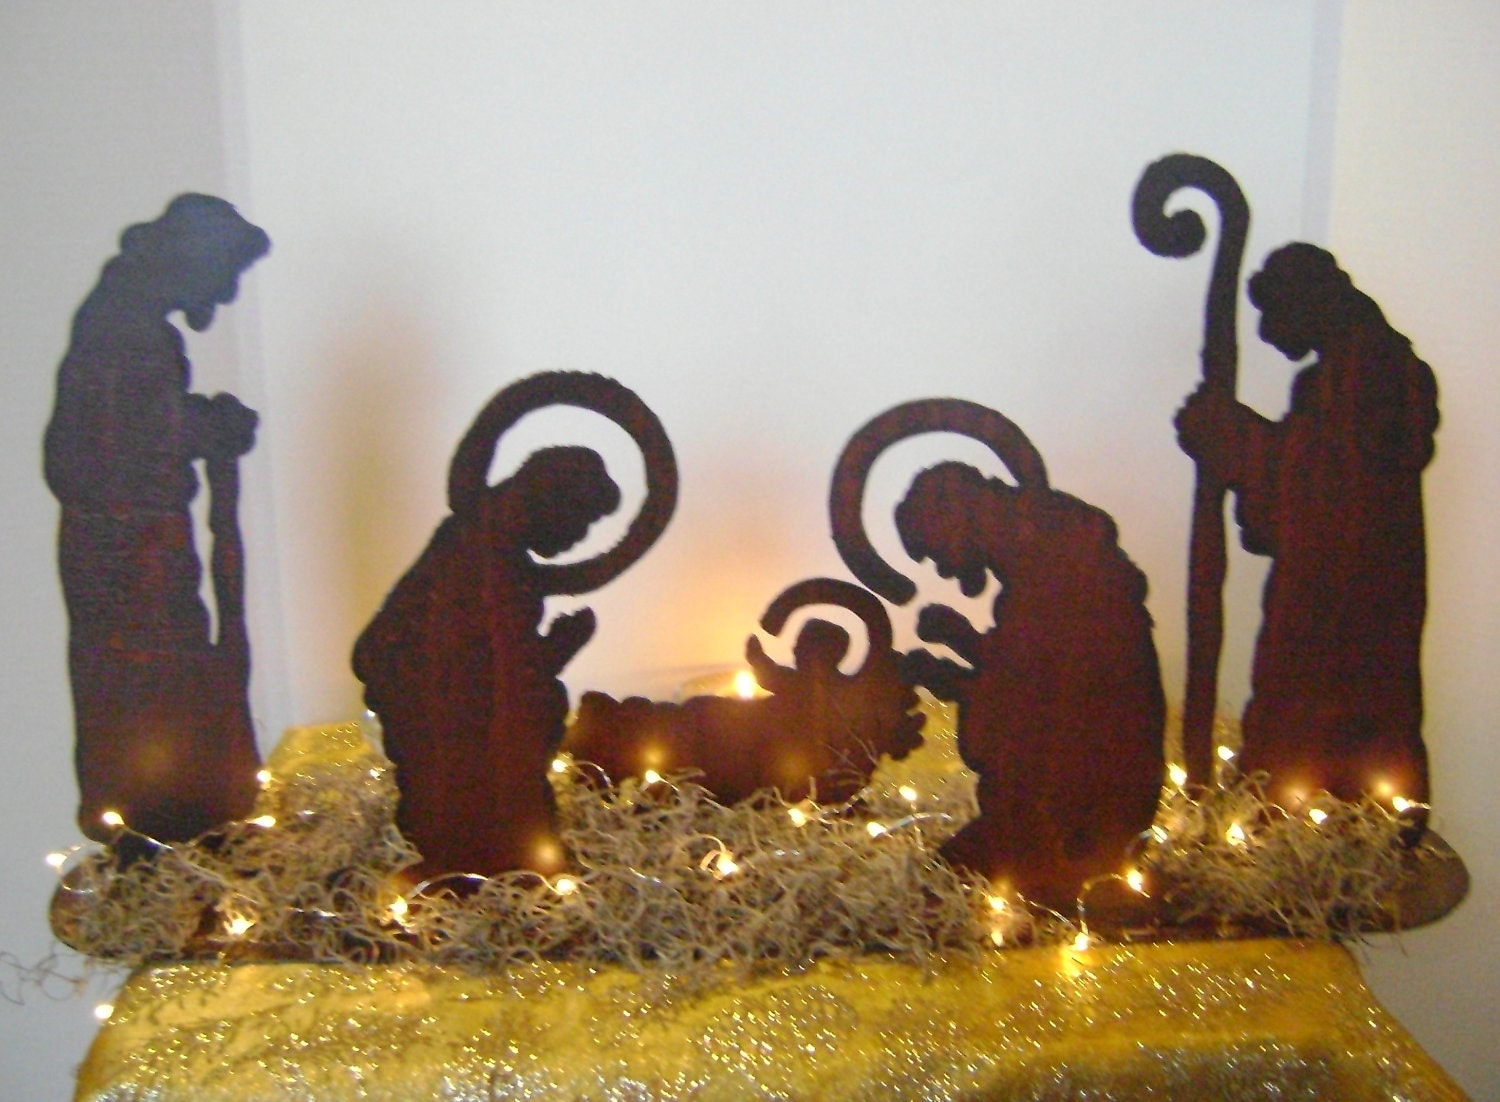 Baby Jesus Nativity Scene